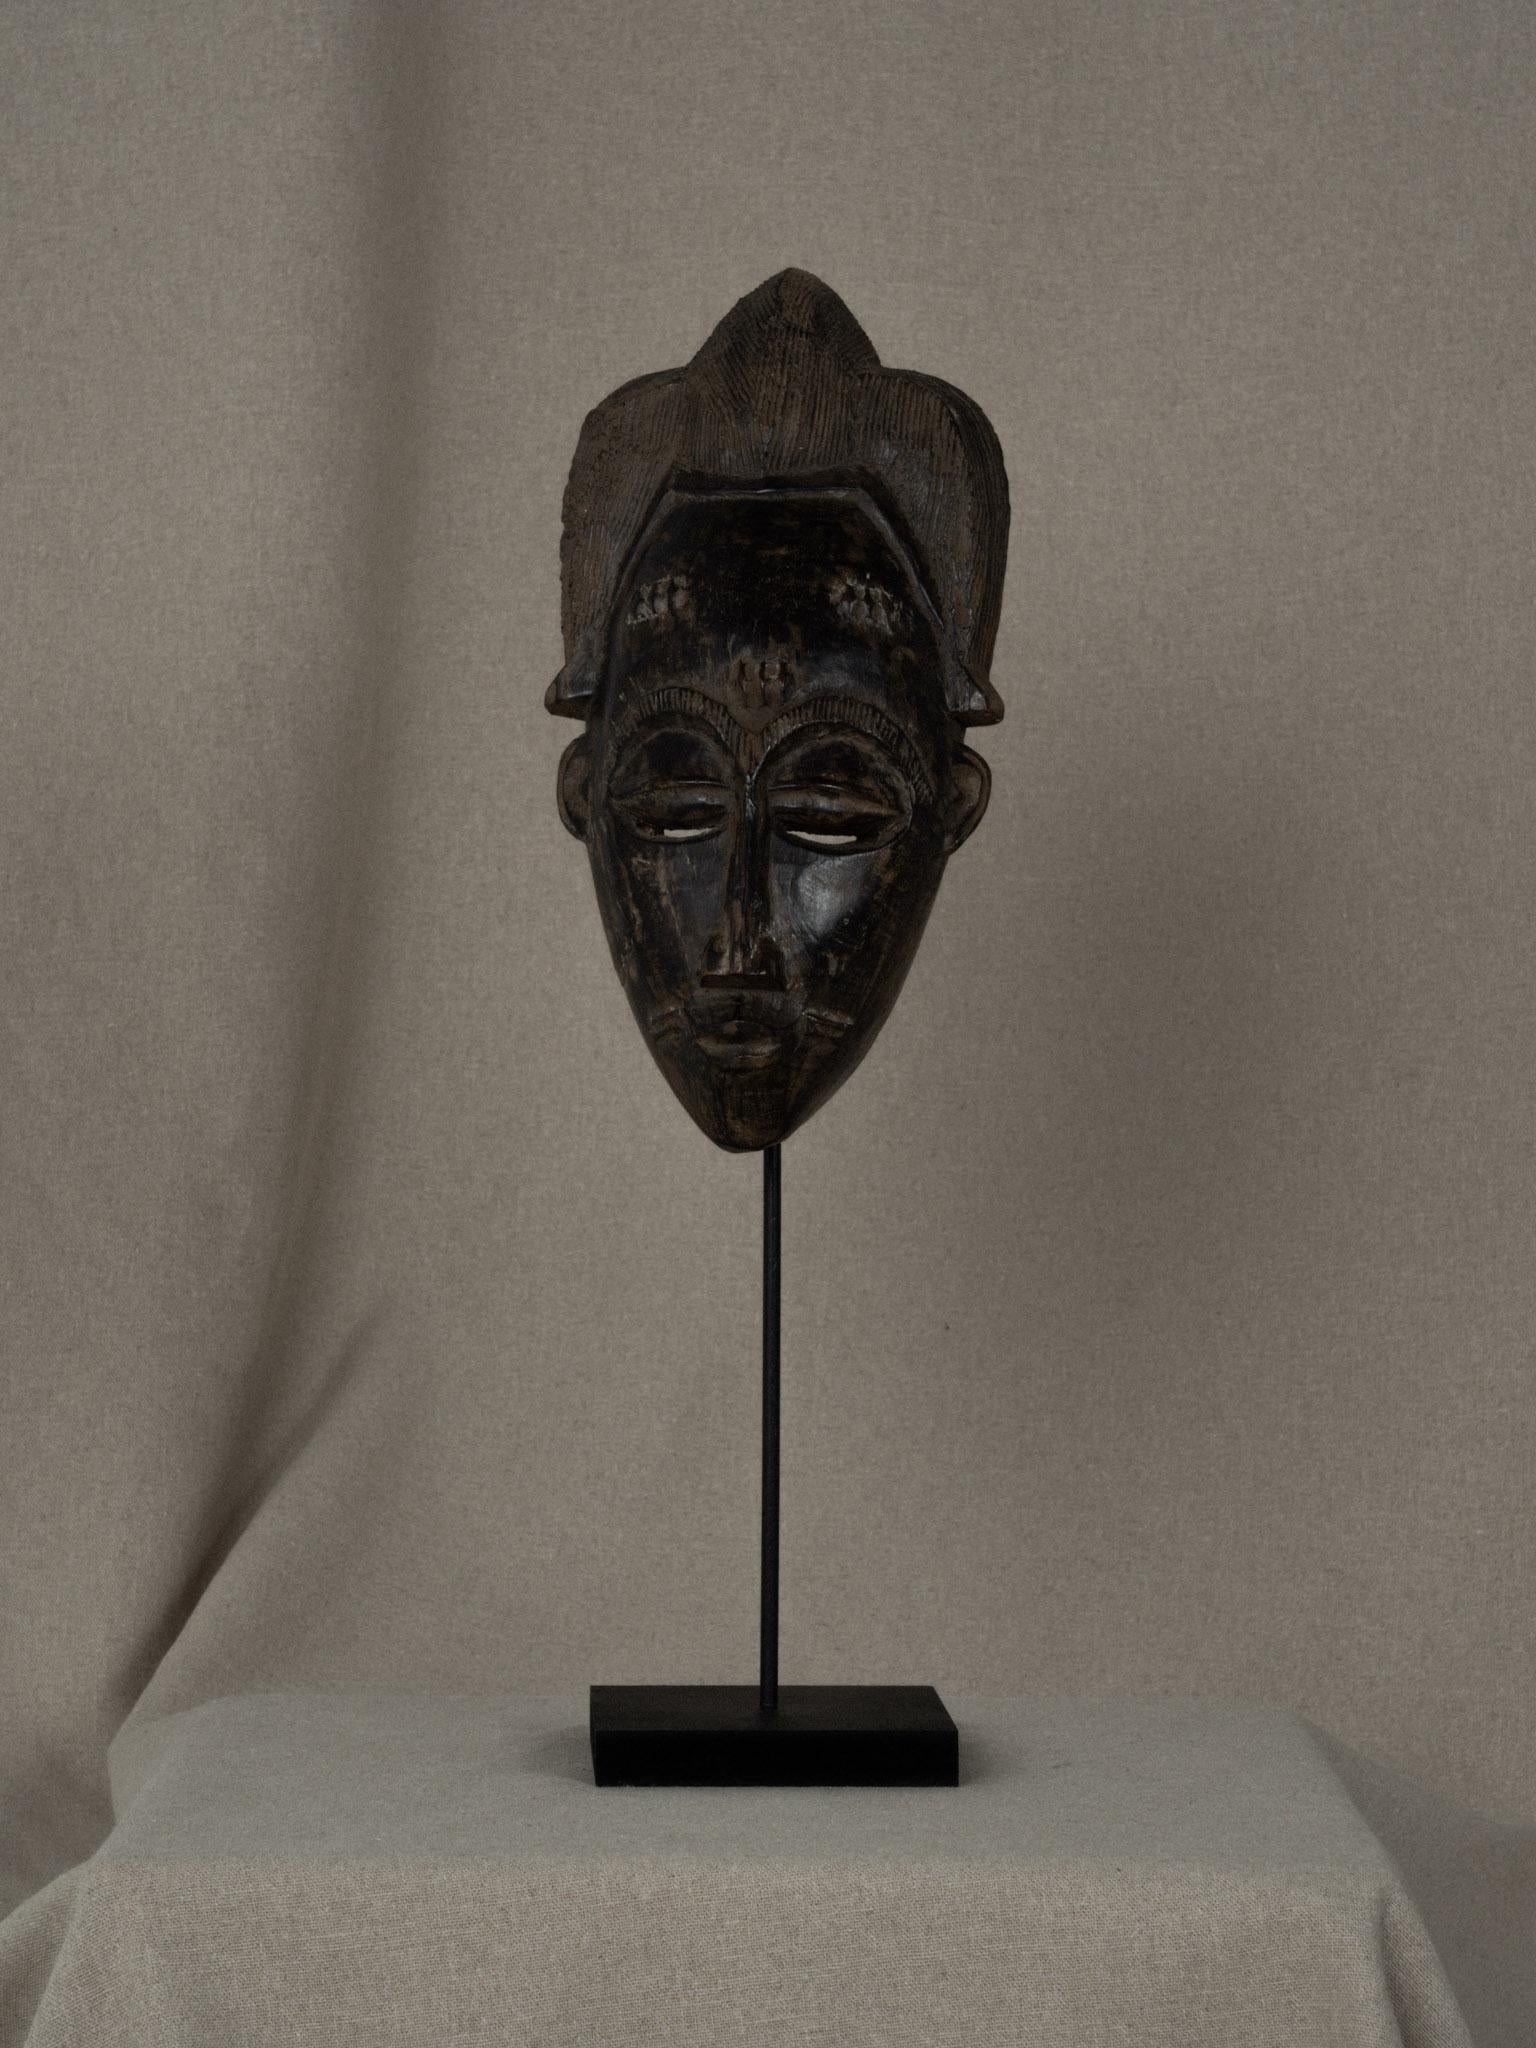 Il s'agit d'une pièce de collection qui représente la richesse de l'art africain. Masque baoulé en bois massif, fabriqué à la main, utilisé dans les danses tribales et diverses cérémonies traditionnelles. Le masque porte sur le front et les joues